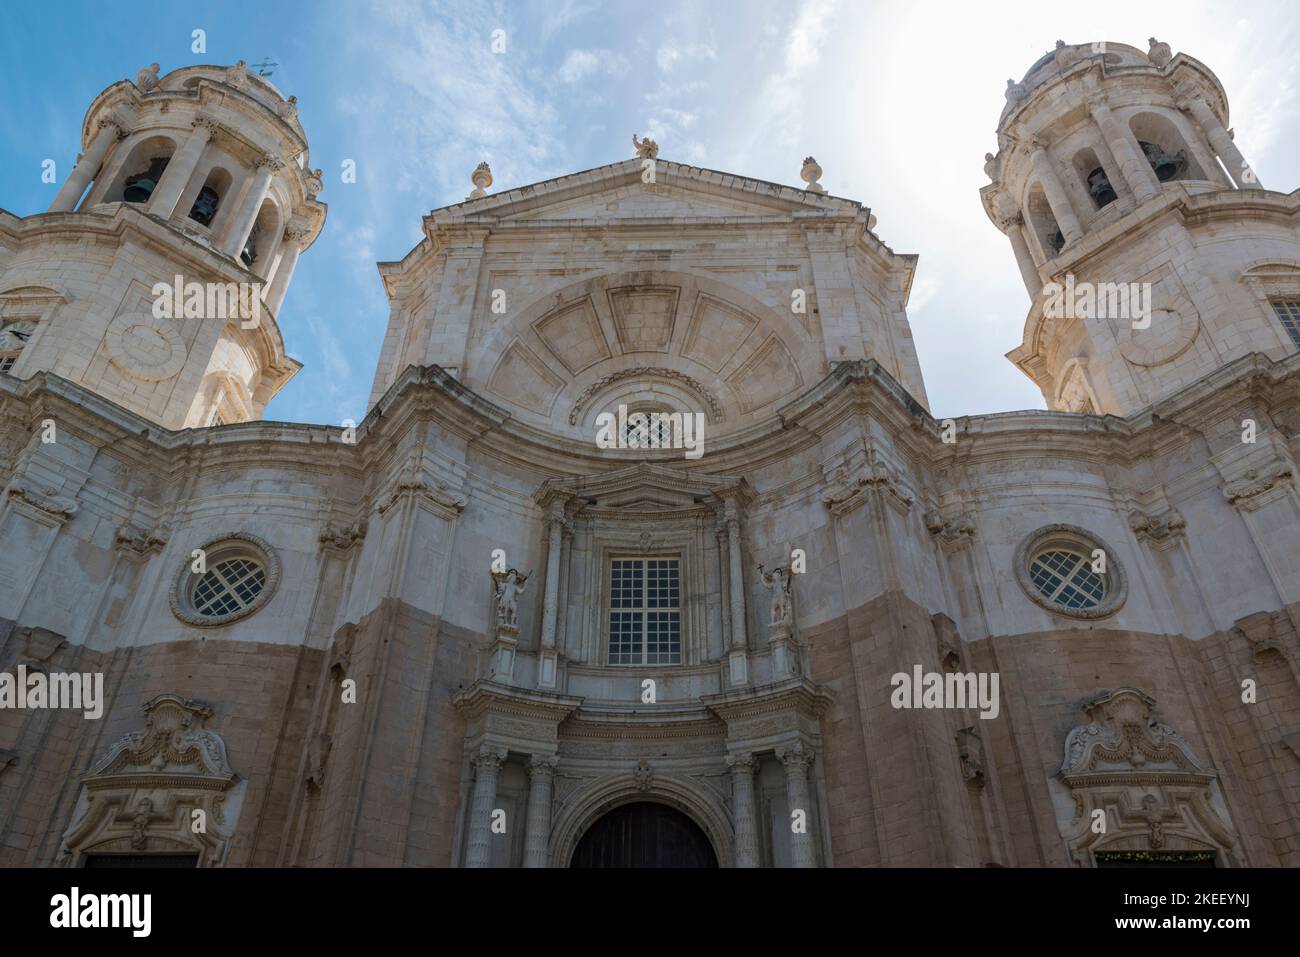 La Catedral de Cadix vue d'en dessous. Cadix, province d'Andalousie, Espagne. Banque D'Images